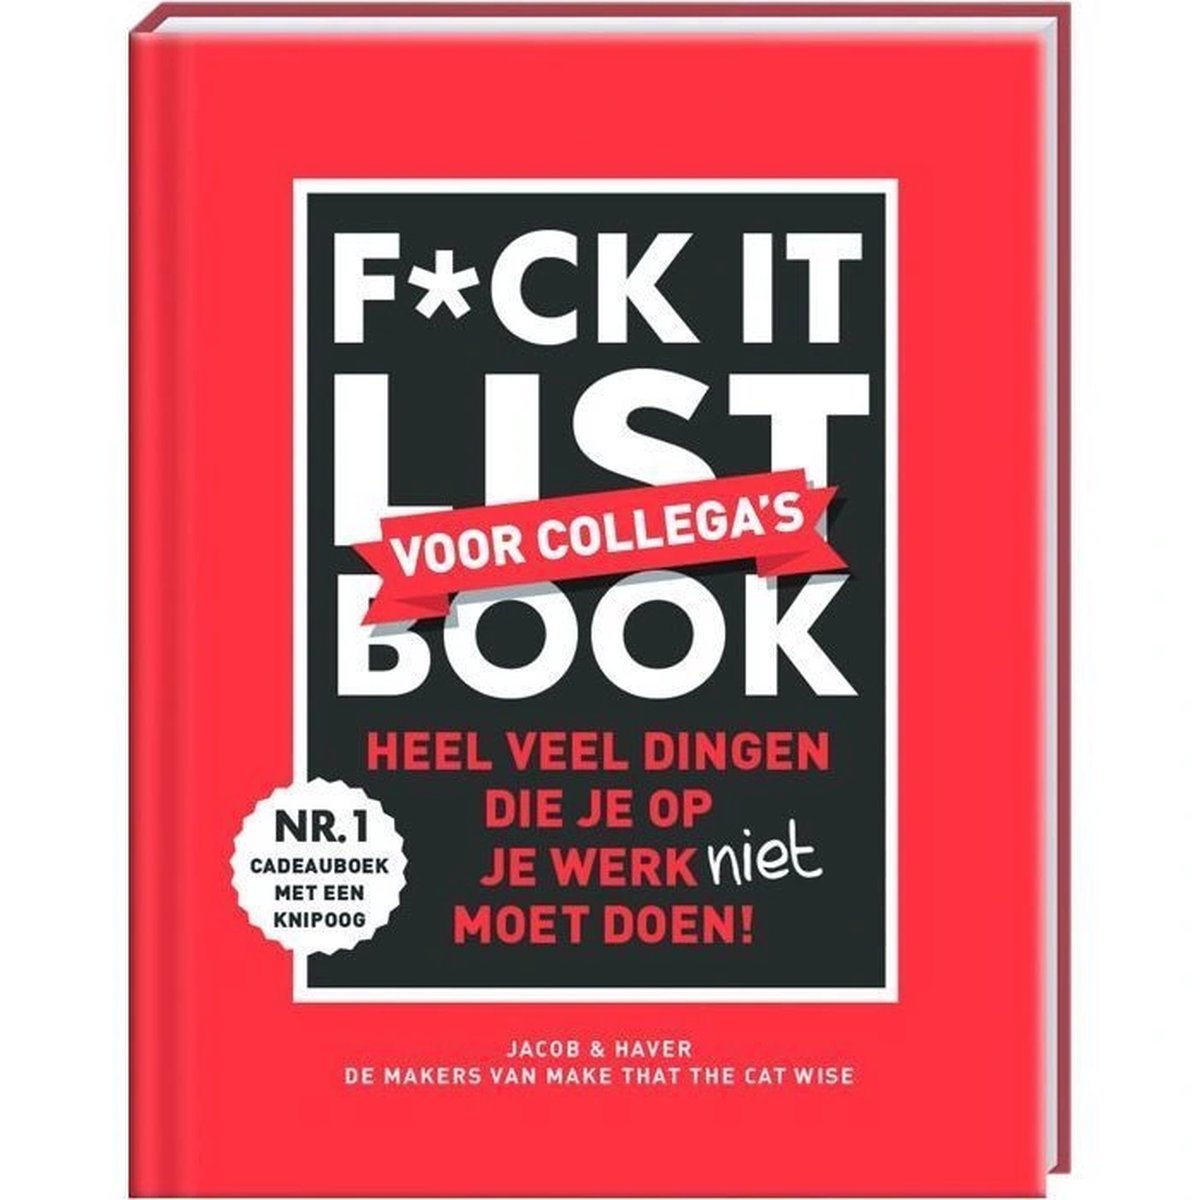 F*ck it list book voor collega’s - Jacob & Haver